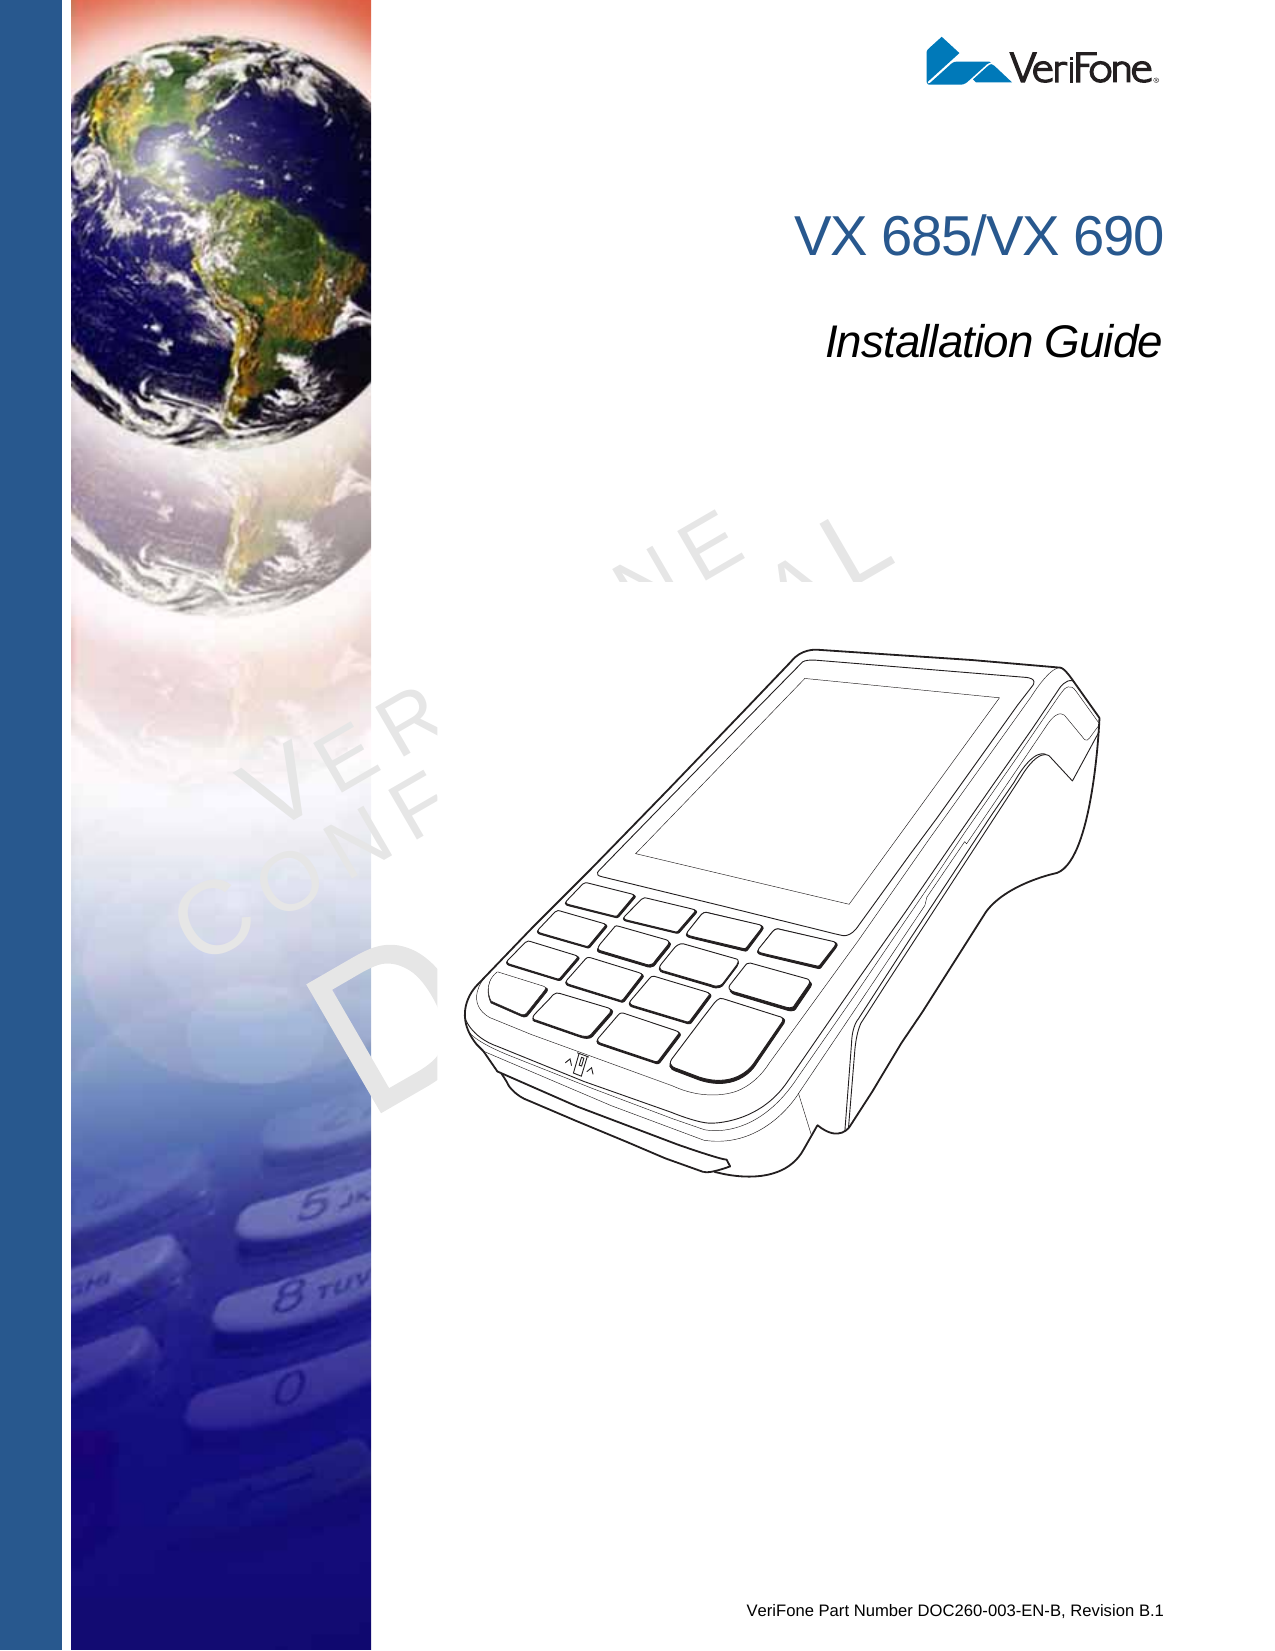 VeriFone Part Number DOC260-003-EN-B, Revision B.1VERIFONECONFIDENTIALREVISION B.1 VX 685/VX 690Installation Guide